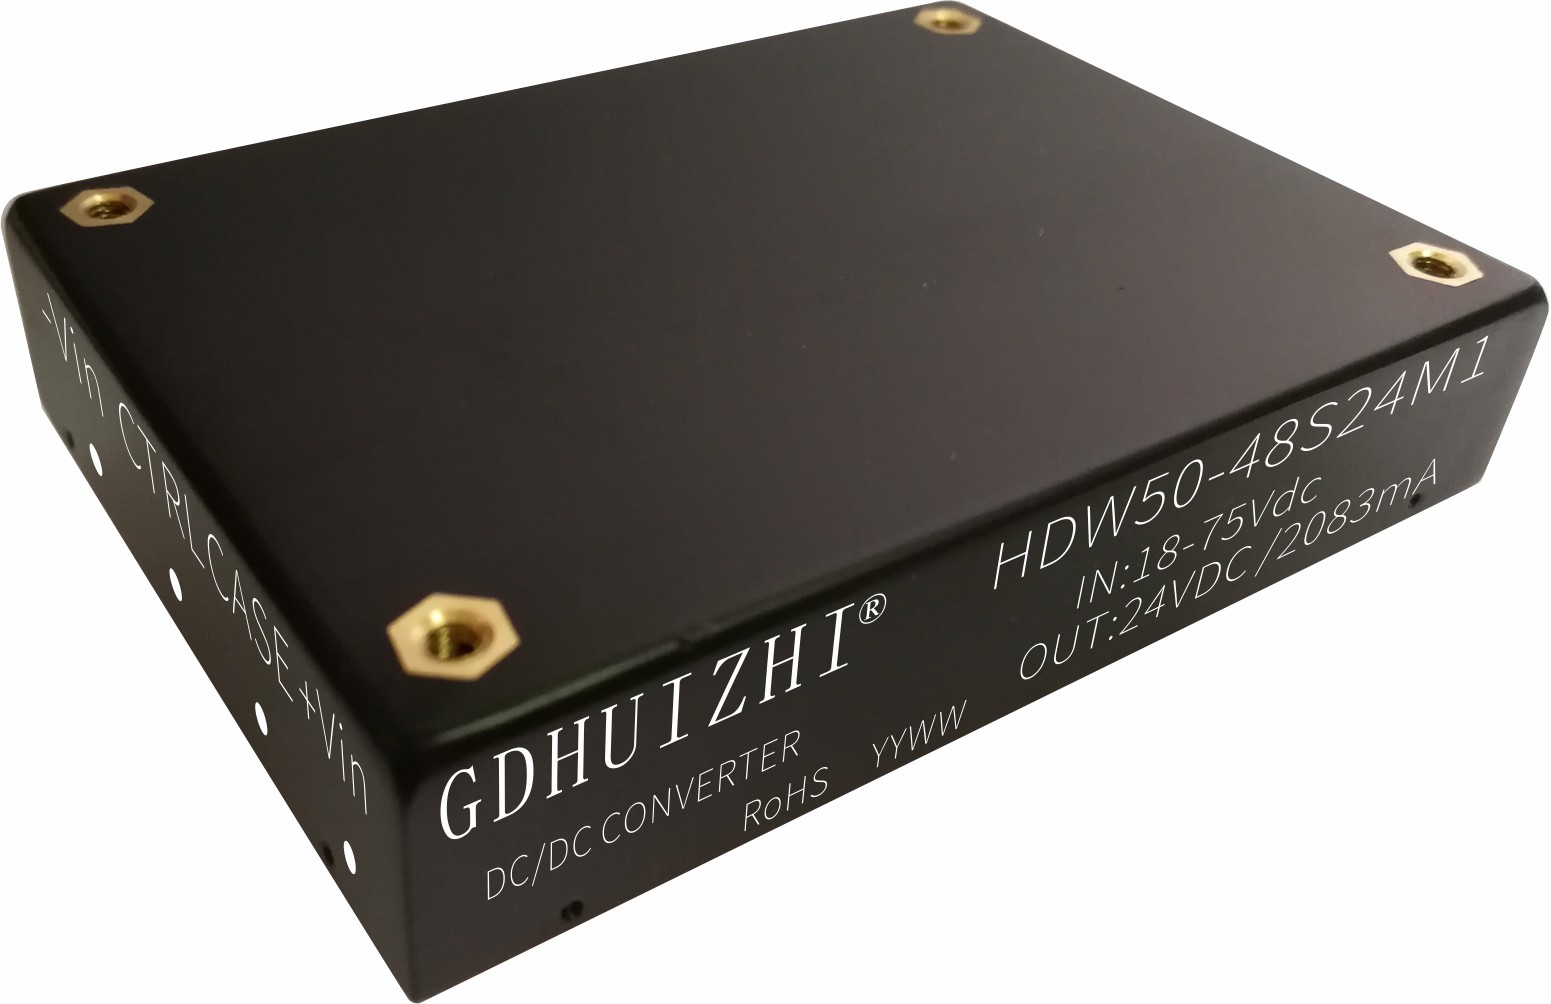 HDW50-48S24M1